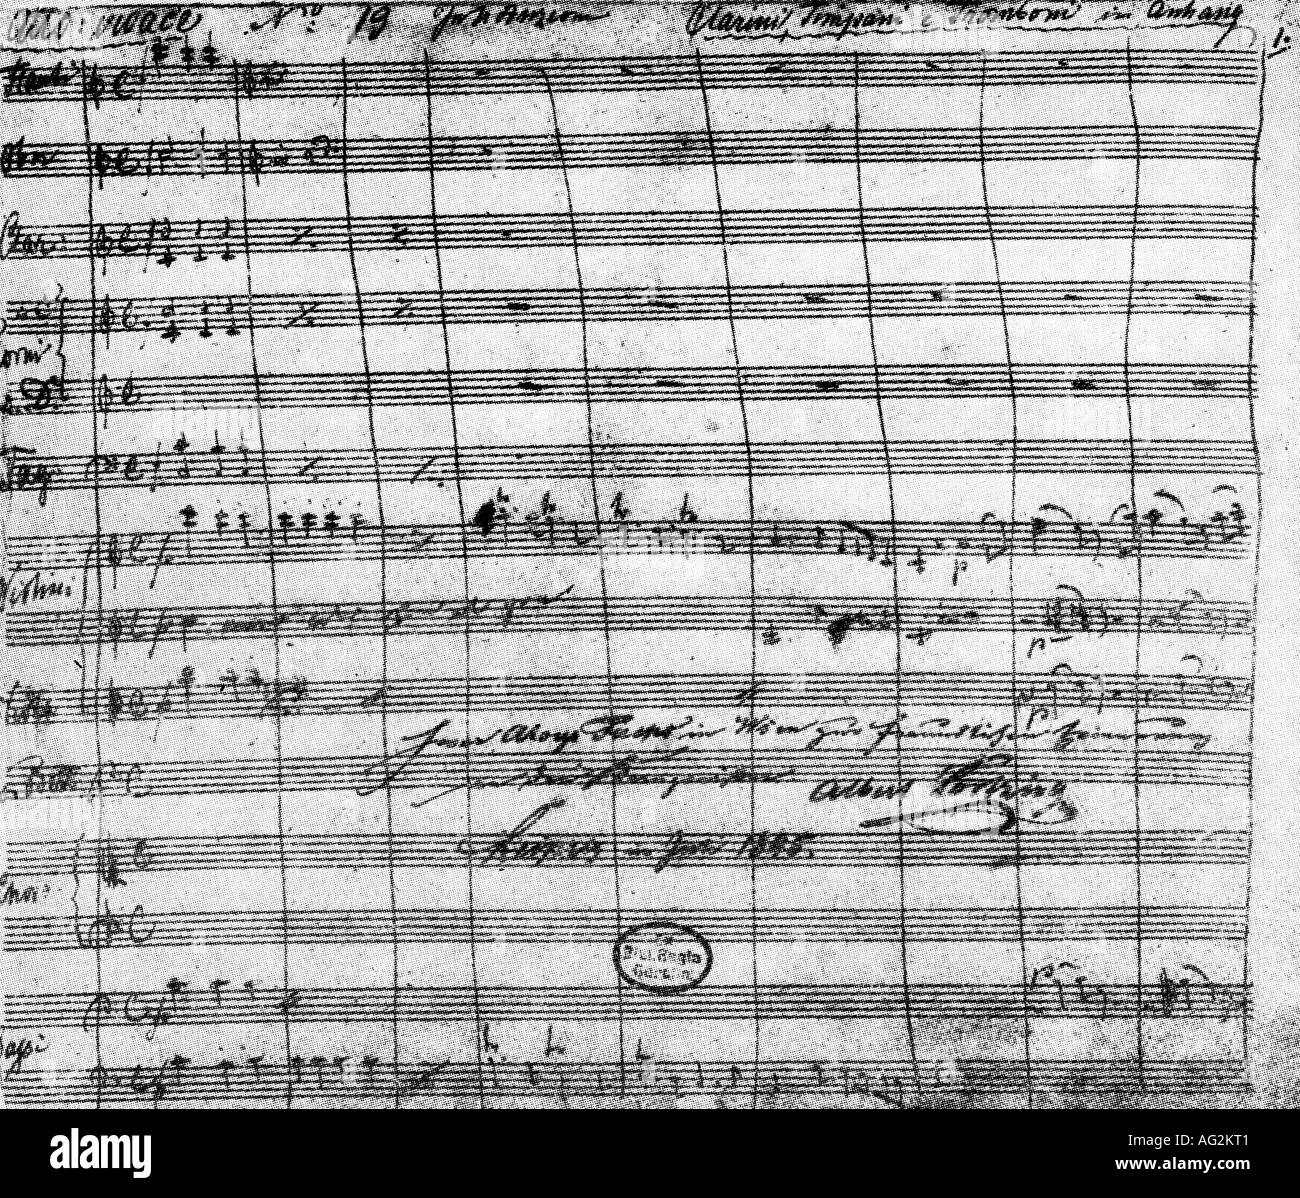 Lortzing, Albert, 23.10.1801 - 21.1.1851, deutscher Komponist, Werke, Oper "Zar und Zimmermann" (Zar und Tischler), 1837, Partitur, 3. Akt, 1. Szene, Stockfoto